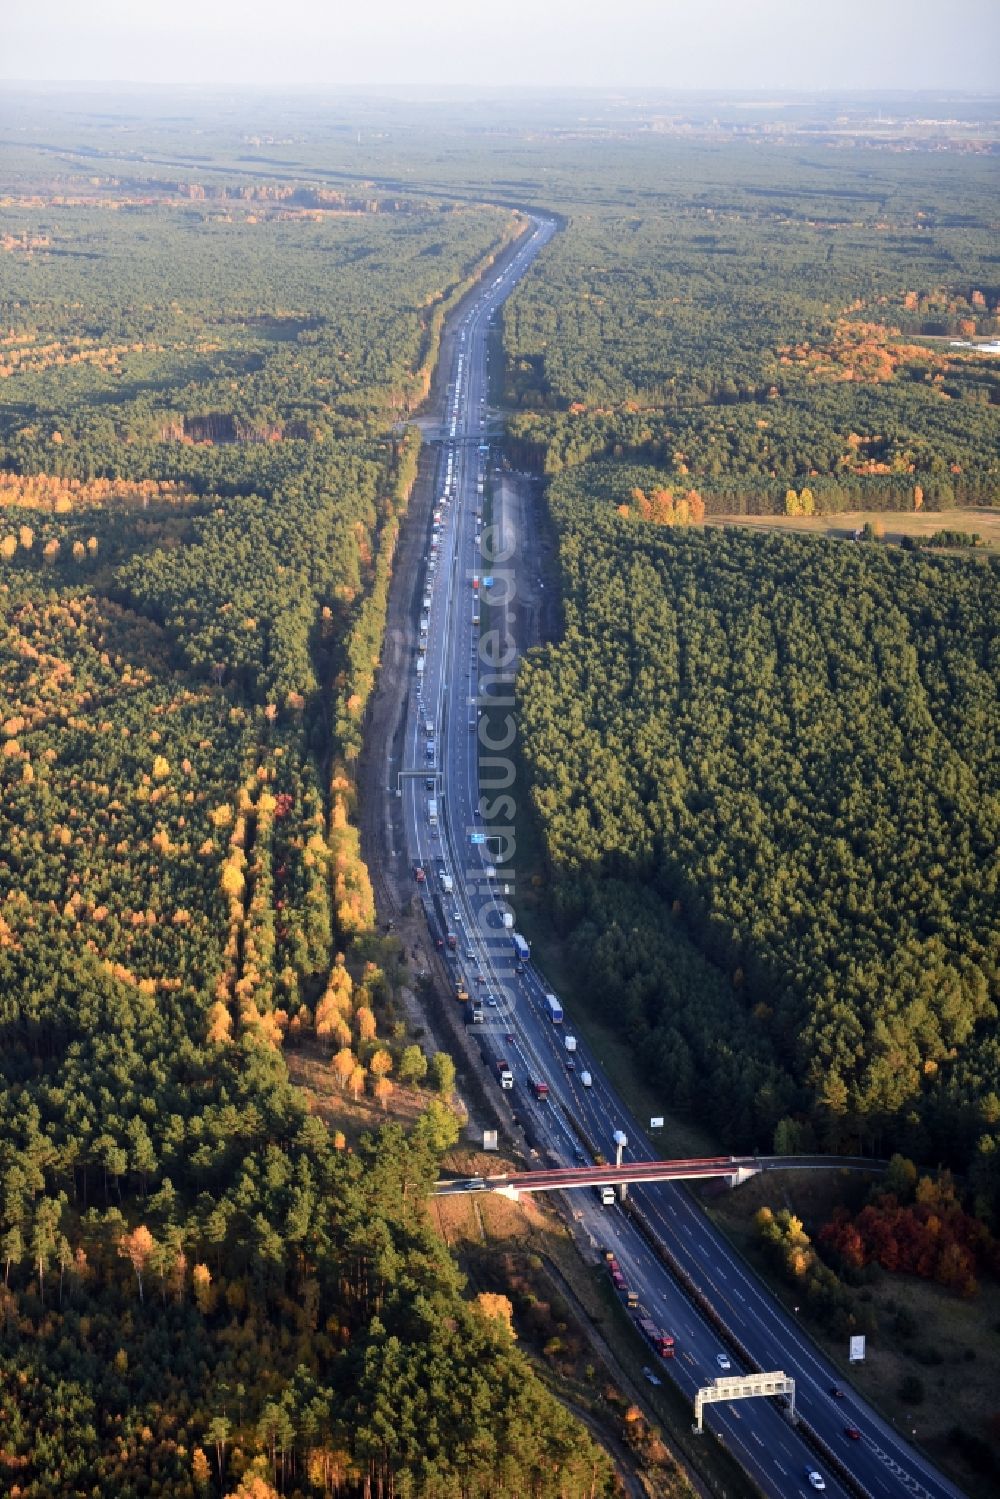 Luftbild Friedrichshof - Autobahn- Ausbau und Spur- Verbreiterung im Streckenverlauf der 12 E30 in Friedrichshof im Bundesland Brandenburg